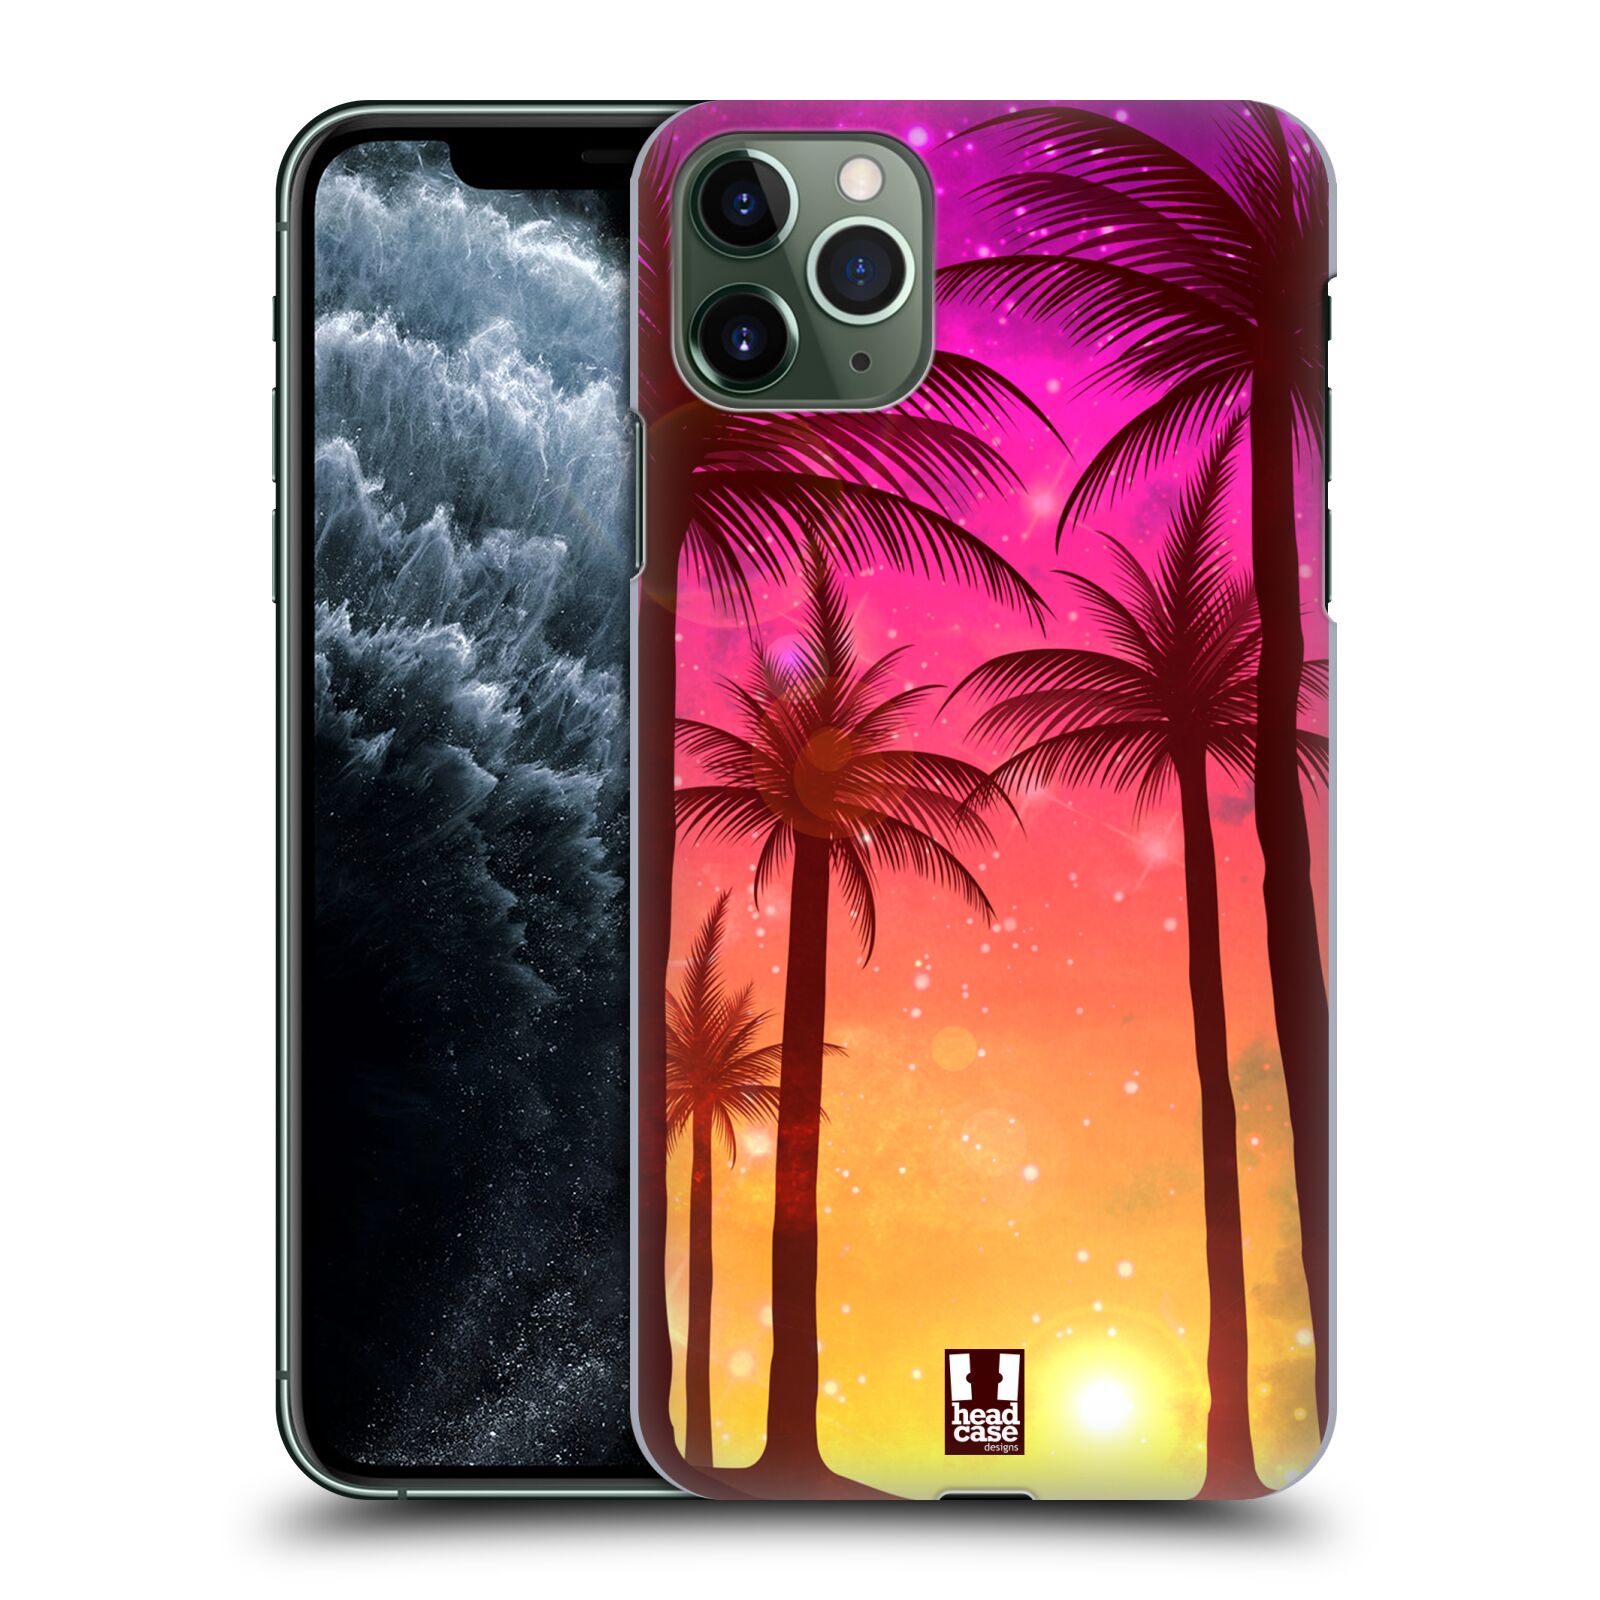 Pouzdro na mobil Apple Iphone 11 PRO MAX - HEAD CASE - vzor Kreslený motiv silueta moře a palmy RŮŽOVÁ